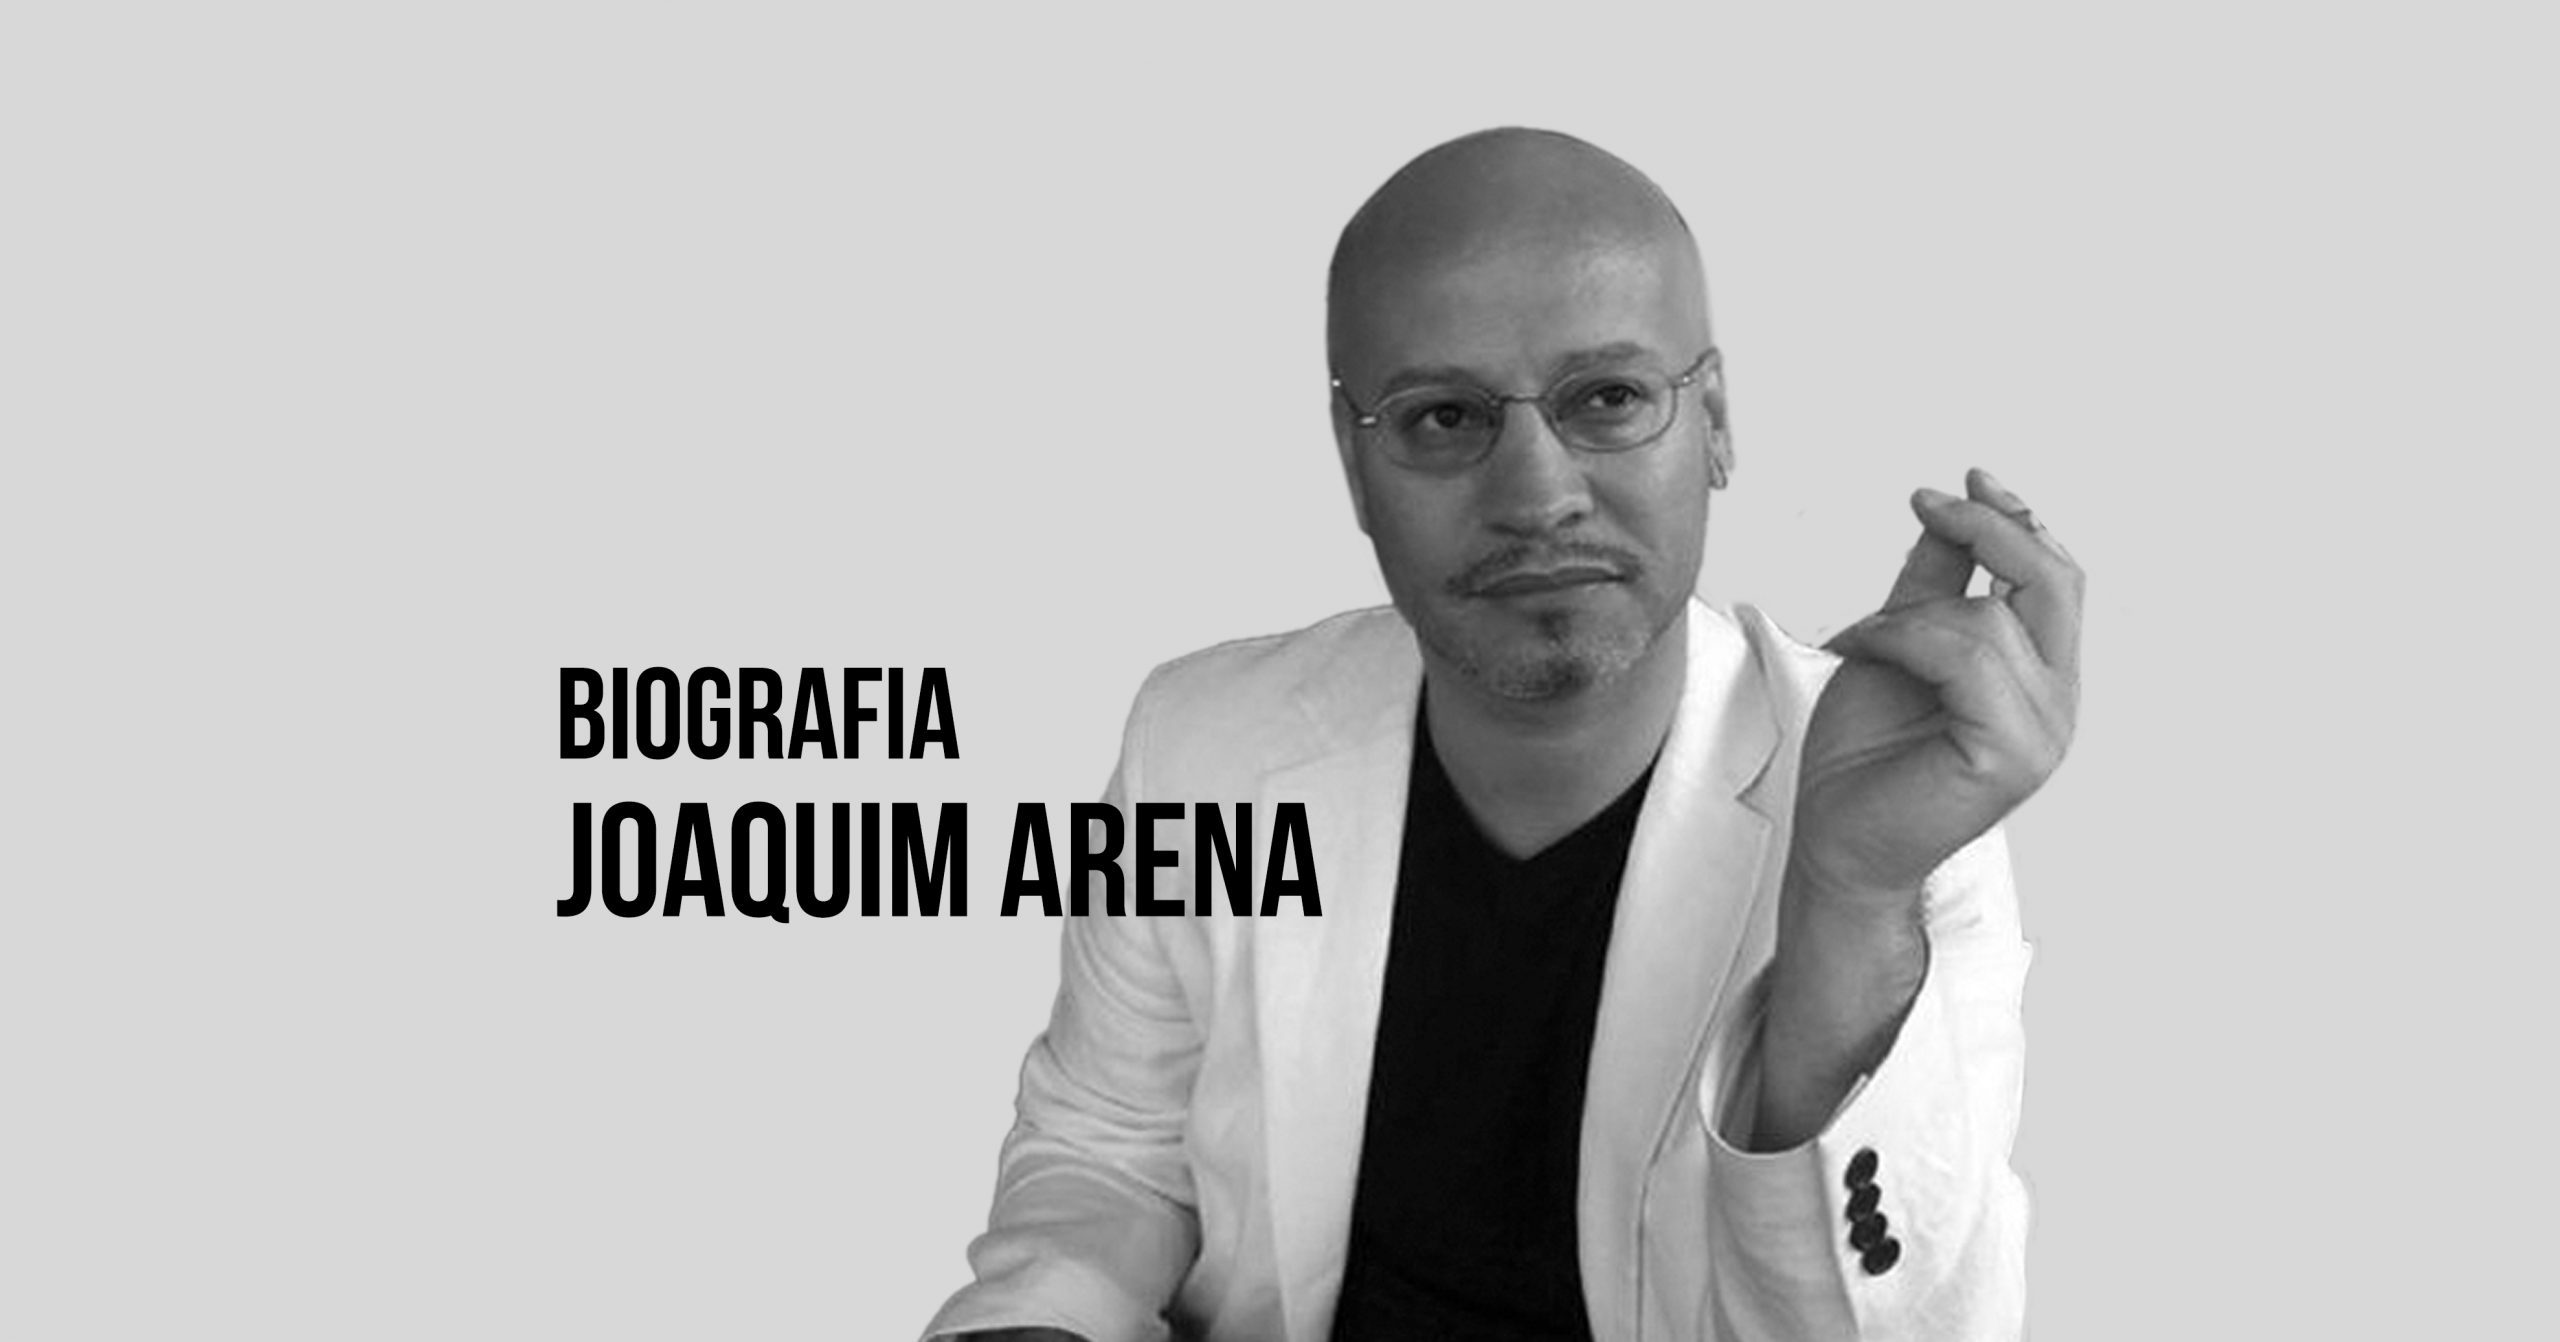 Joaquim Arena